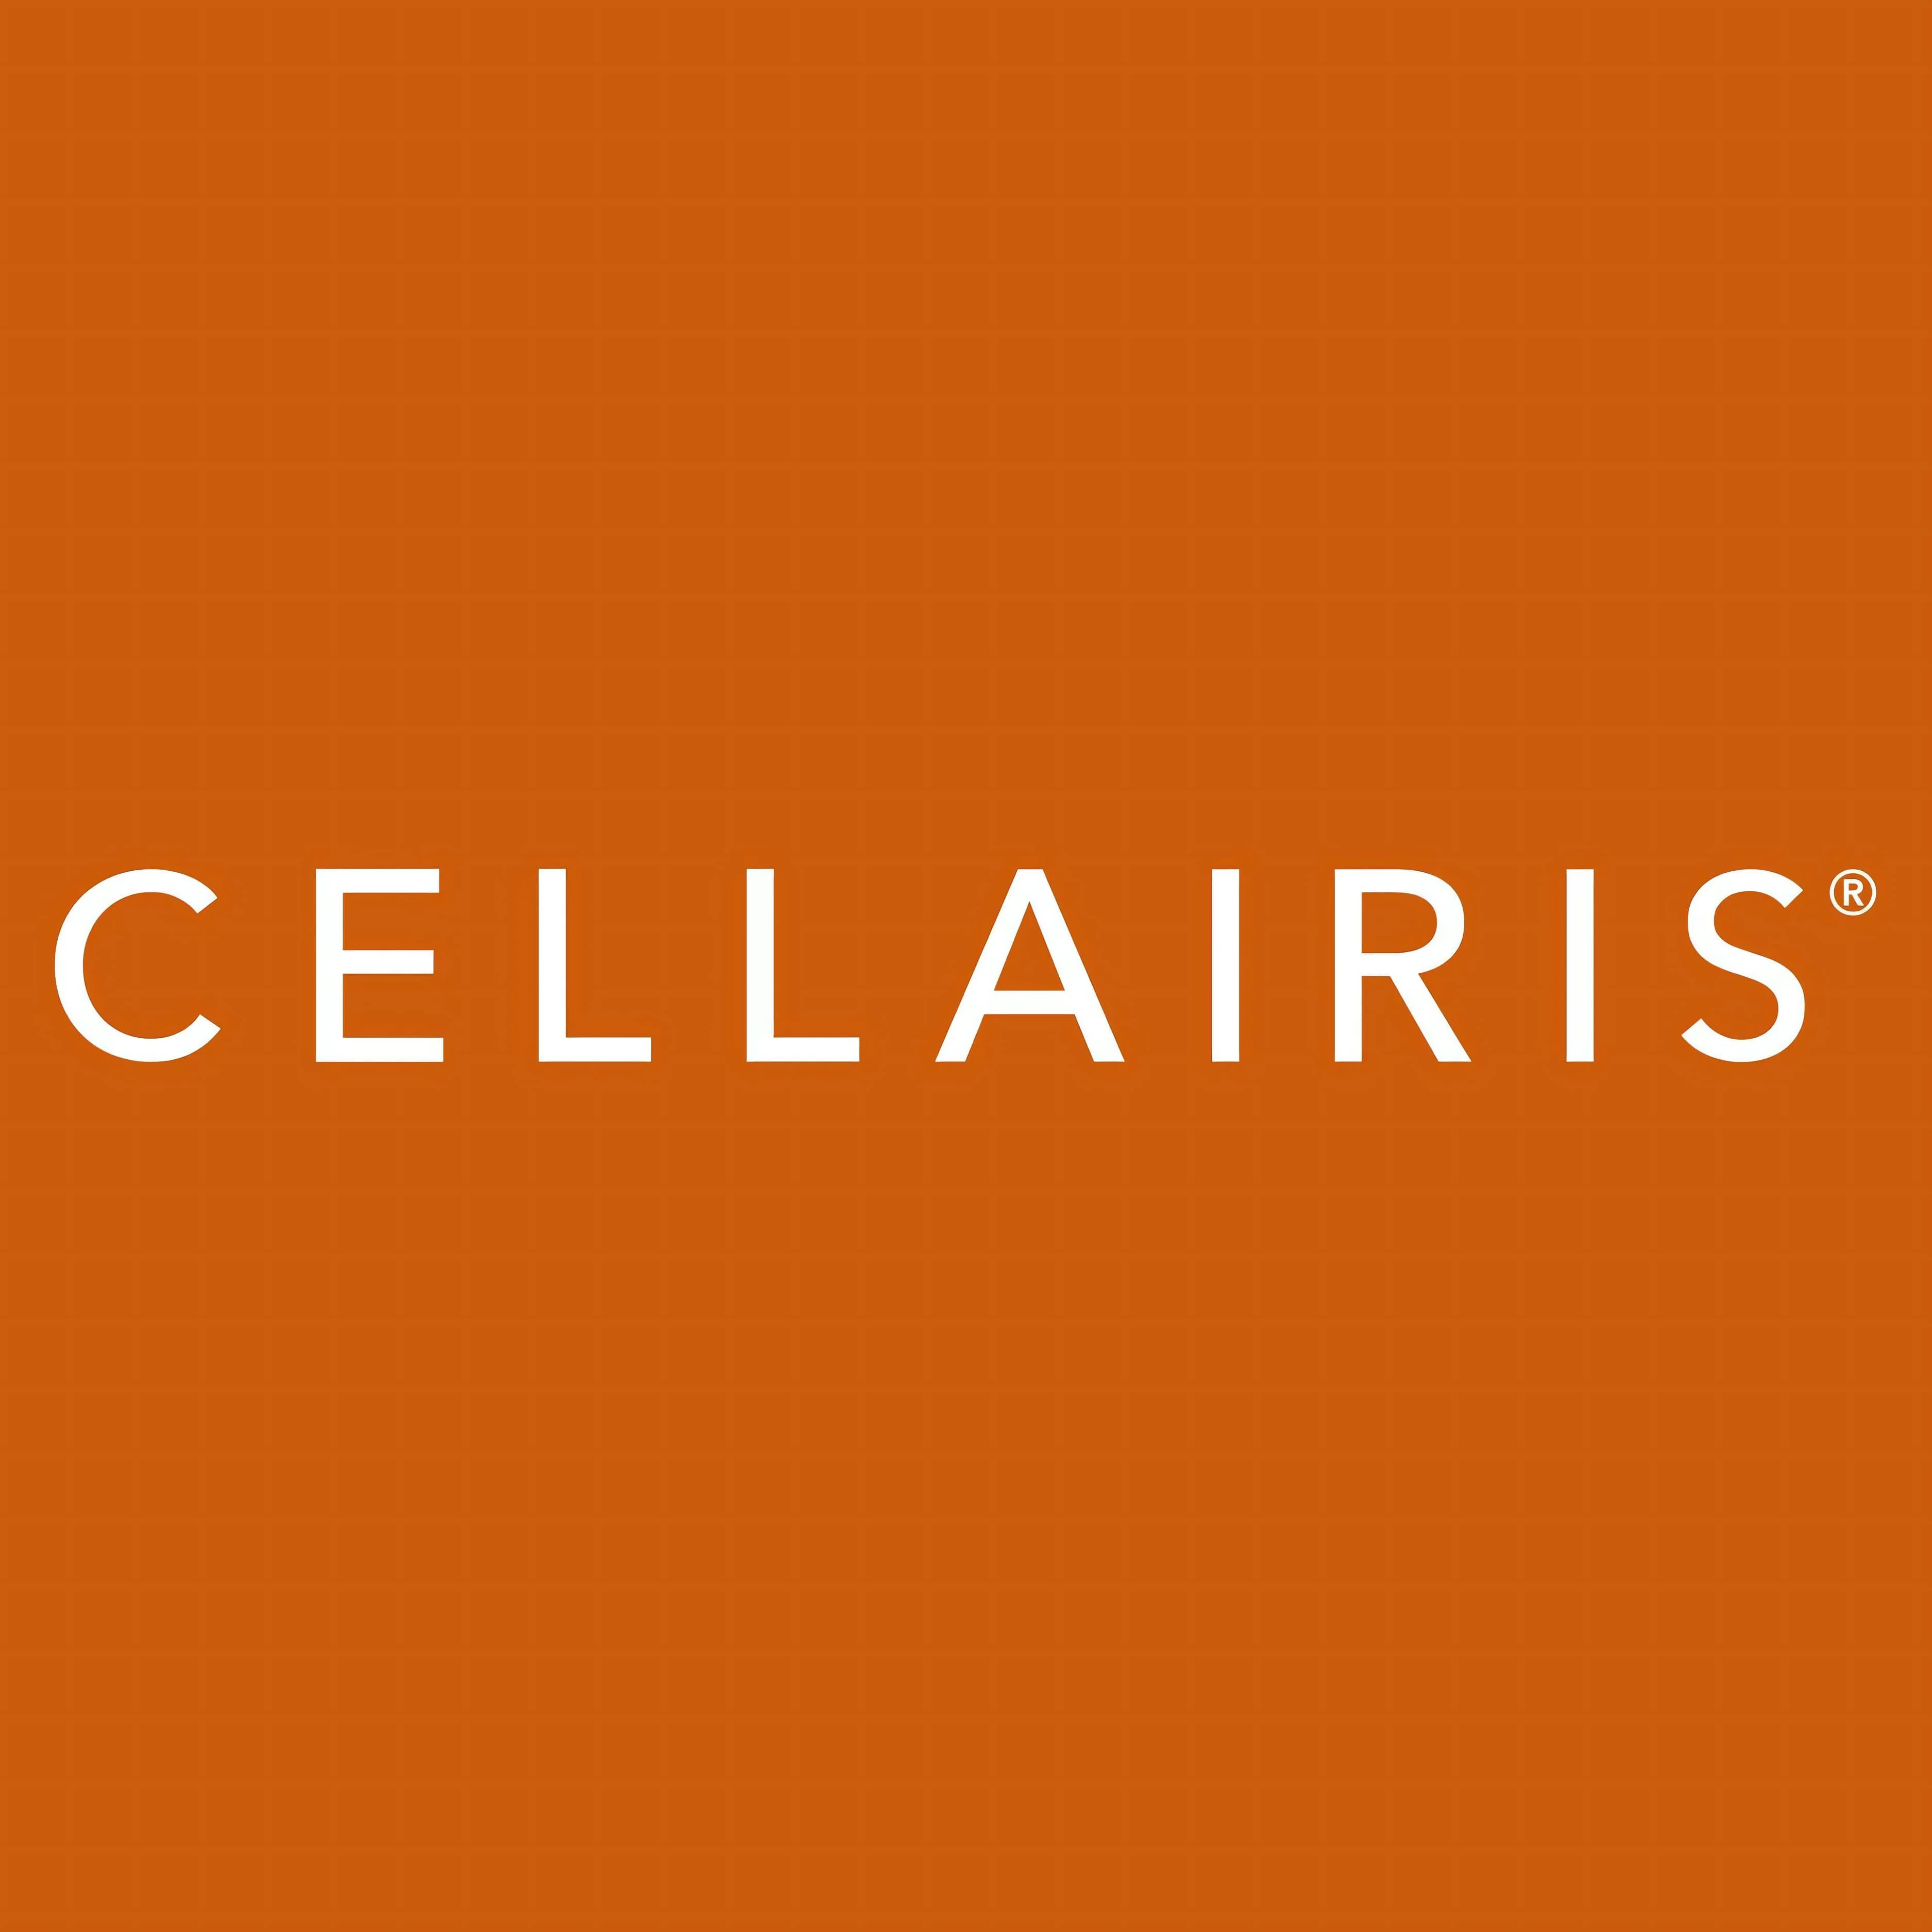 Cellairis-3310